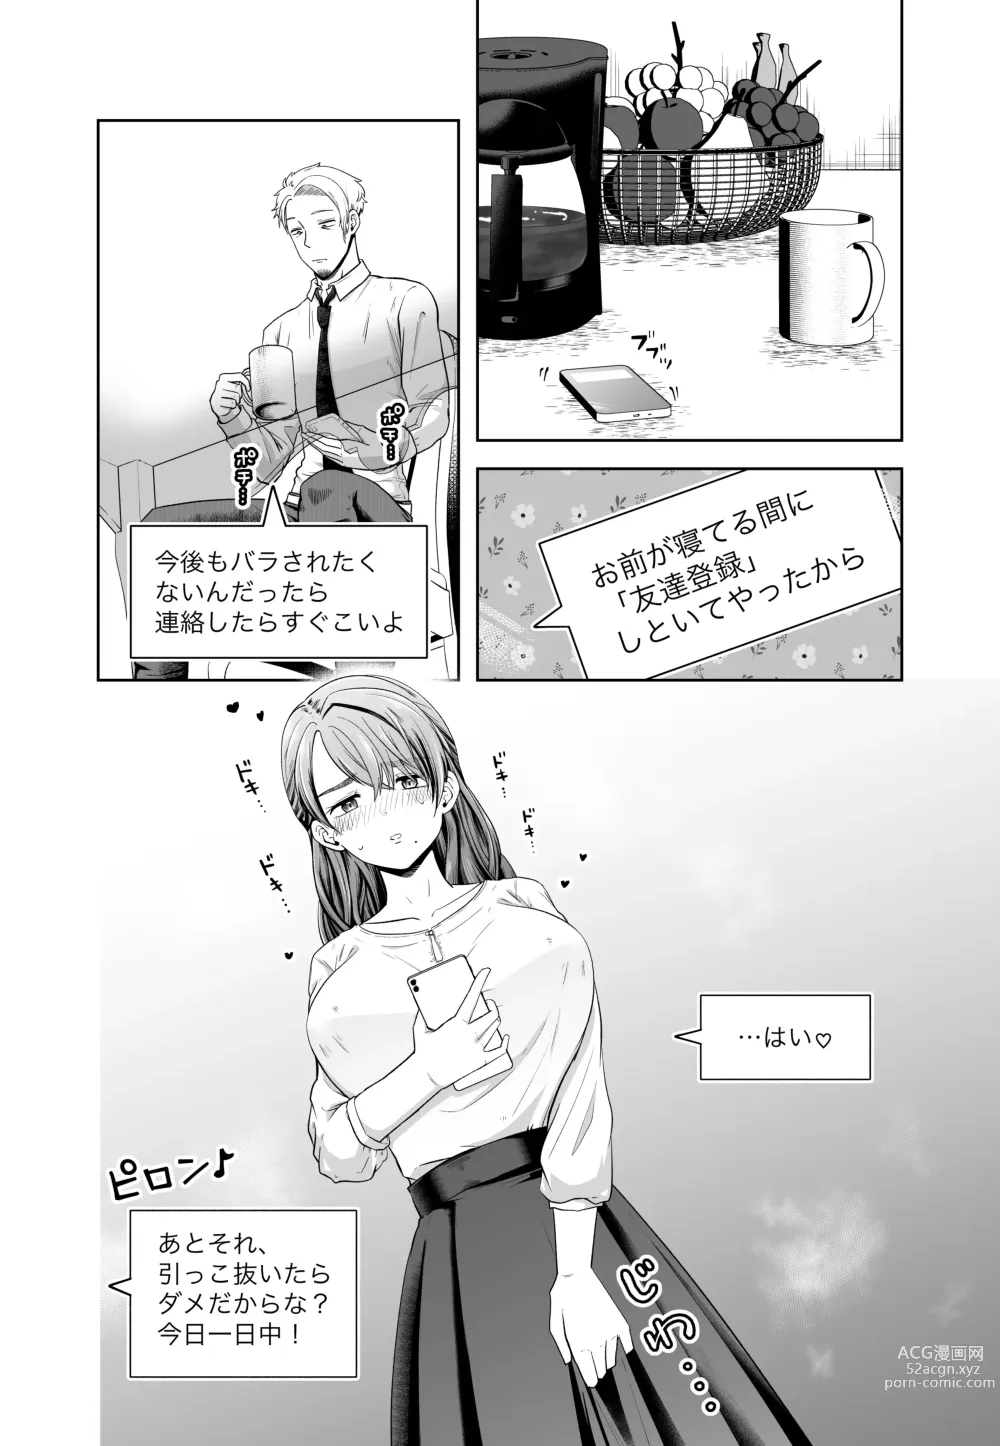 Page 54 of doujinshi Danna no Joushi ni Odosareru.